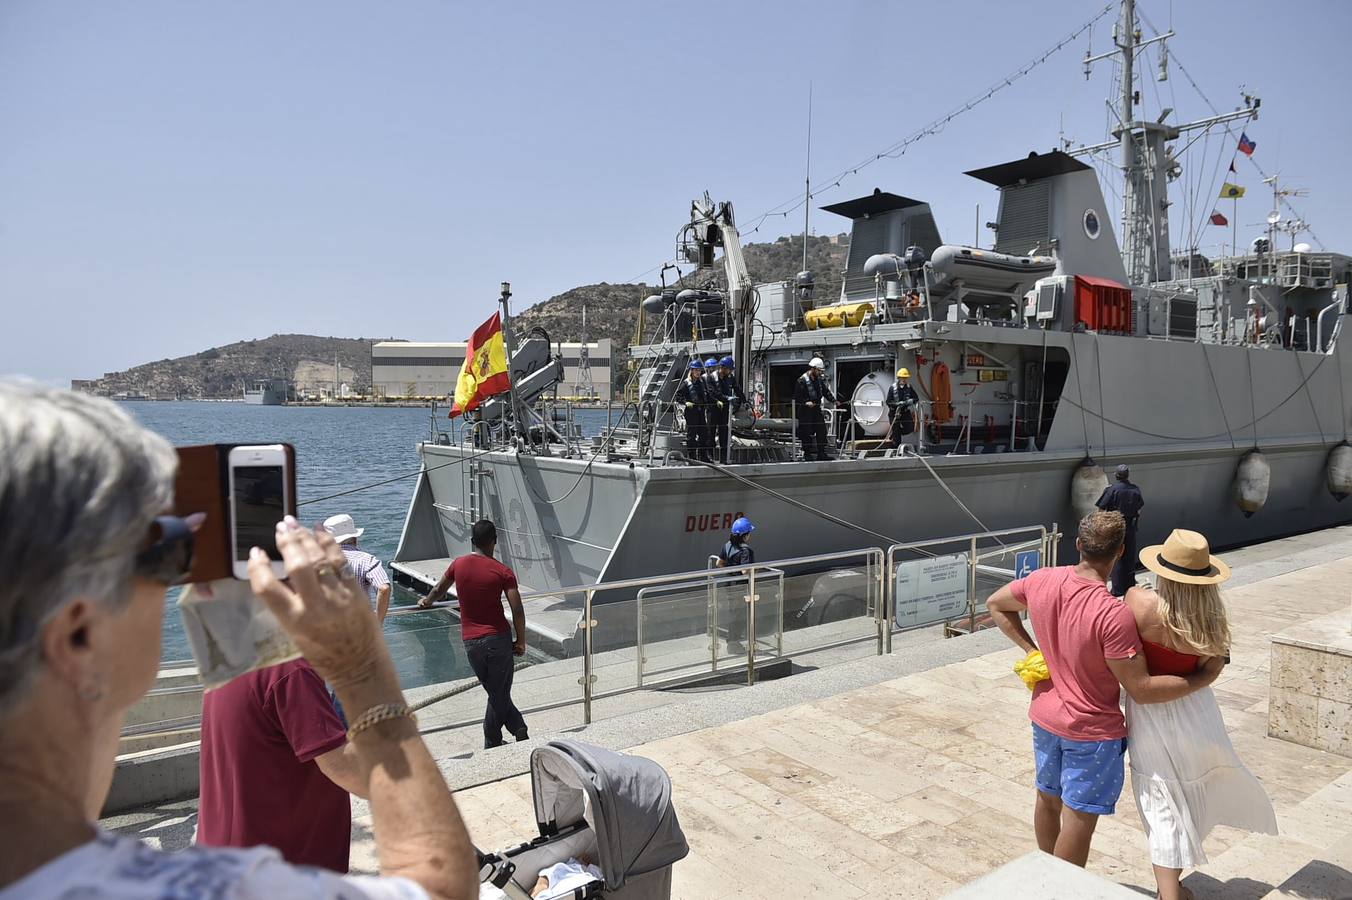 Decenas de personas participaron en Cartagena en los actos culturales y divulgativos organizados por la Armada con motivo del Día de las Fuerzas Armadas, como visitas al cazaminas 'Duero', atracado en el muelle Alfonso XII.